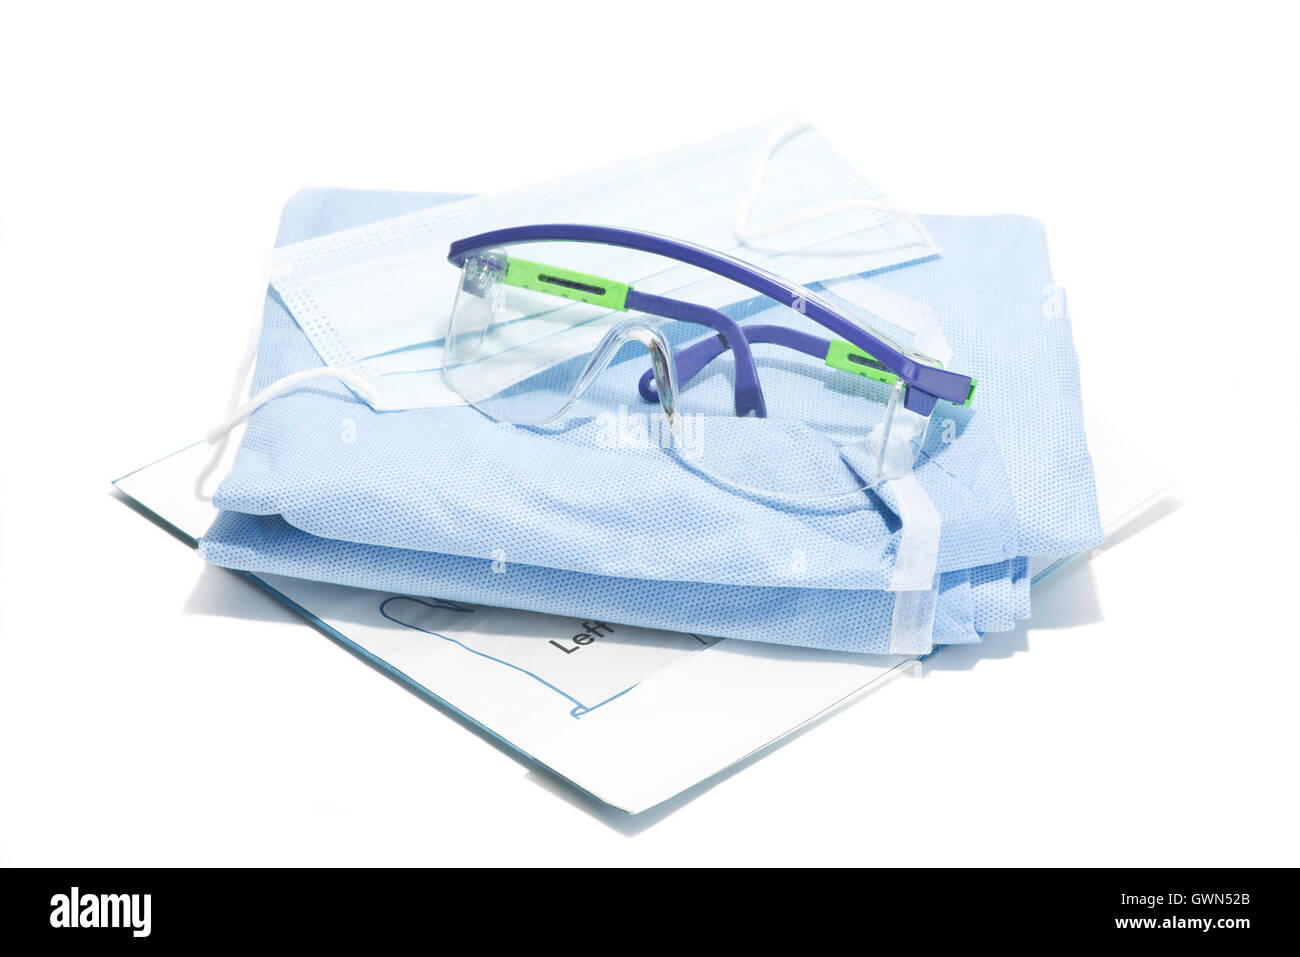 Guanti, maschera, camice e occhiali di sicurezza per la protezione personale durante le procedure chirurgiche. Foto Stock